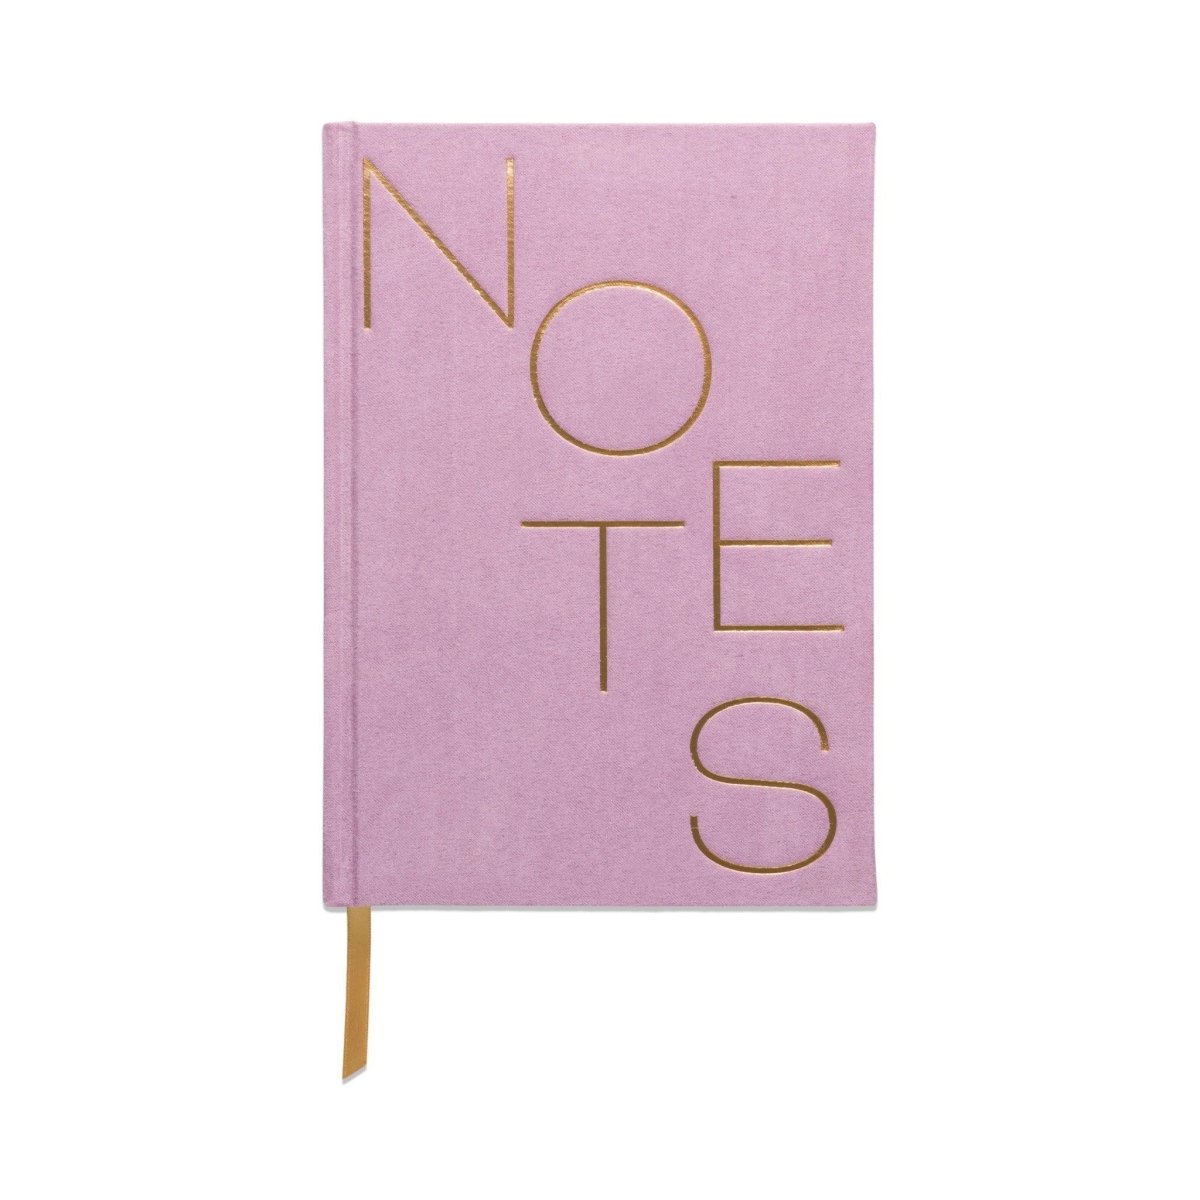 Designworks Ink - 'Lilac' Suede-Cloth Journal w/ Pocket Notes - The Epicurean Trader